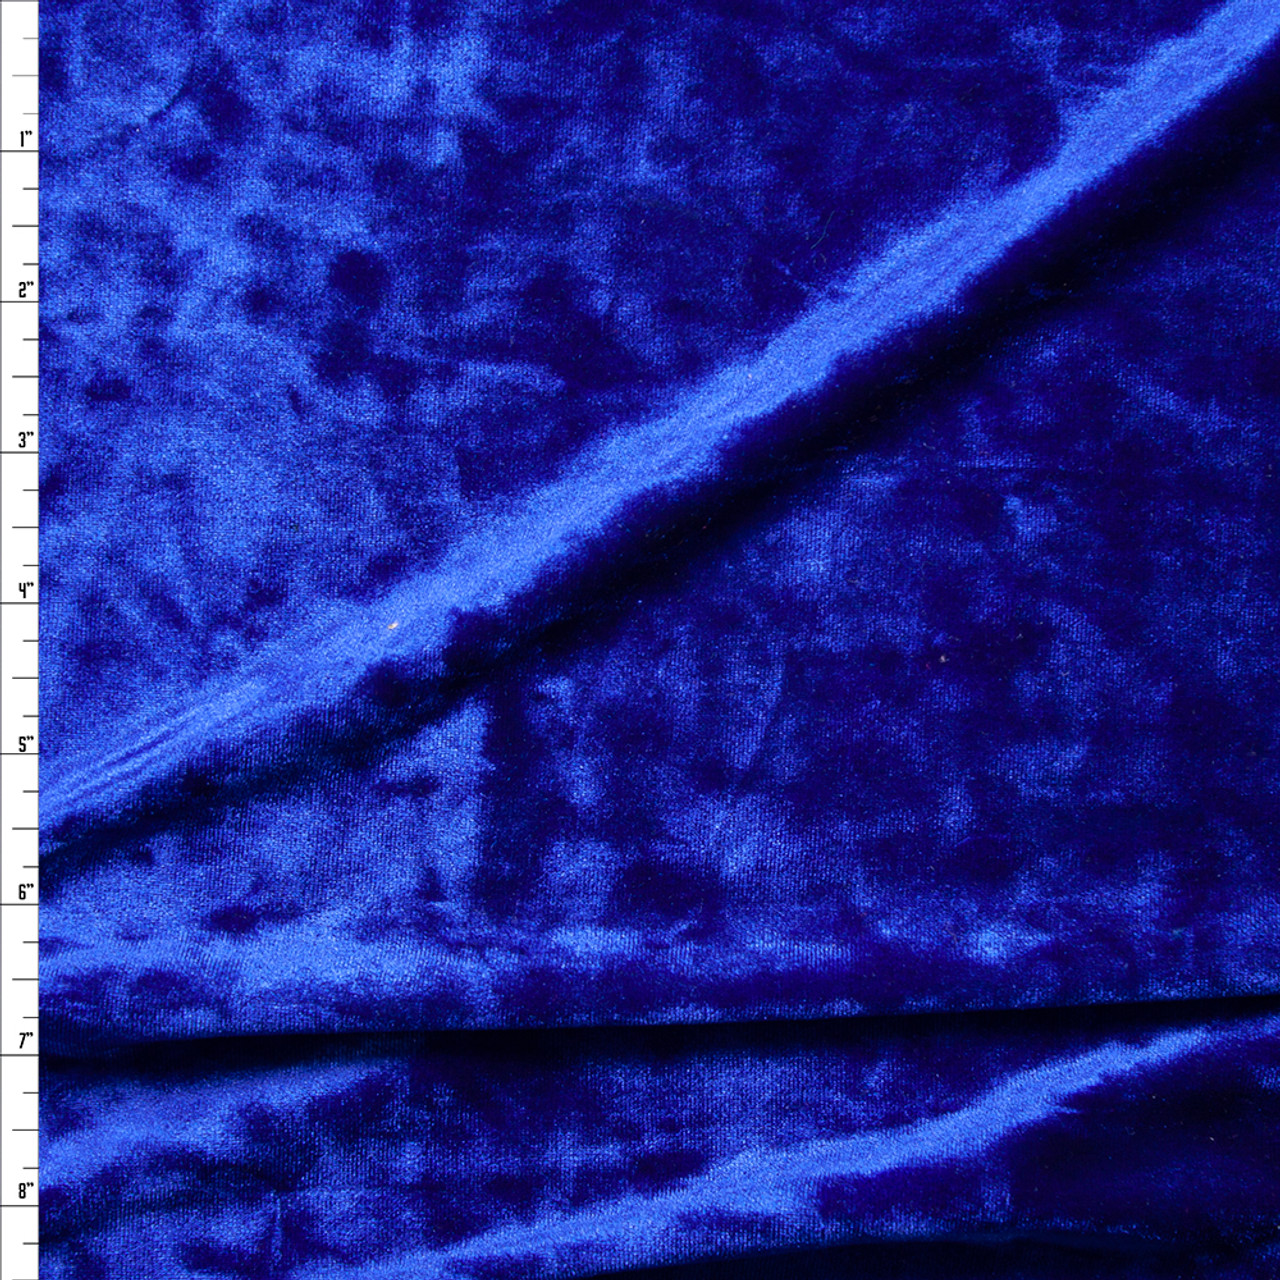 royal blue velvet fabric